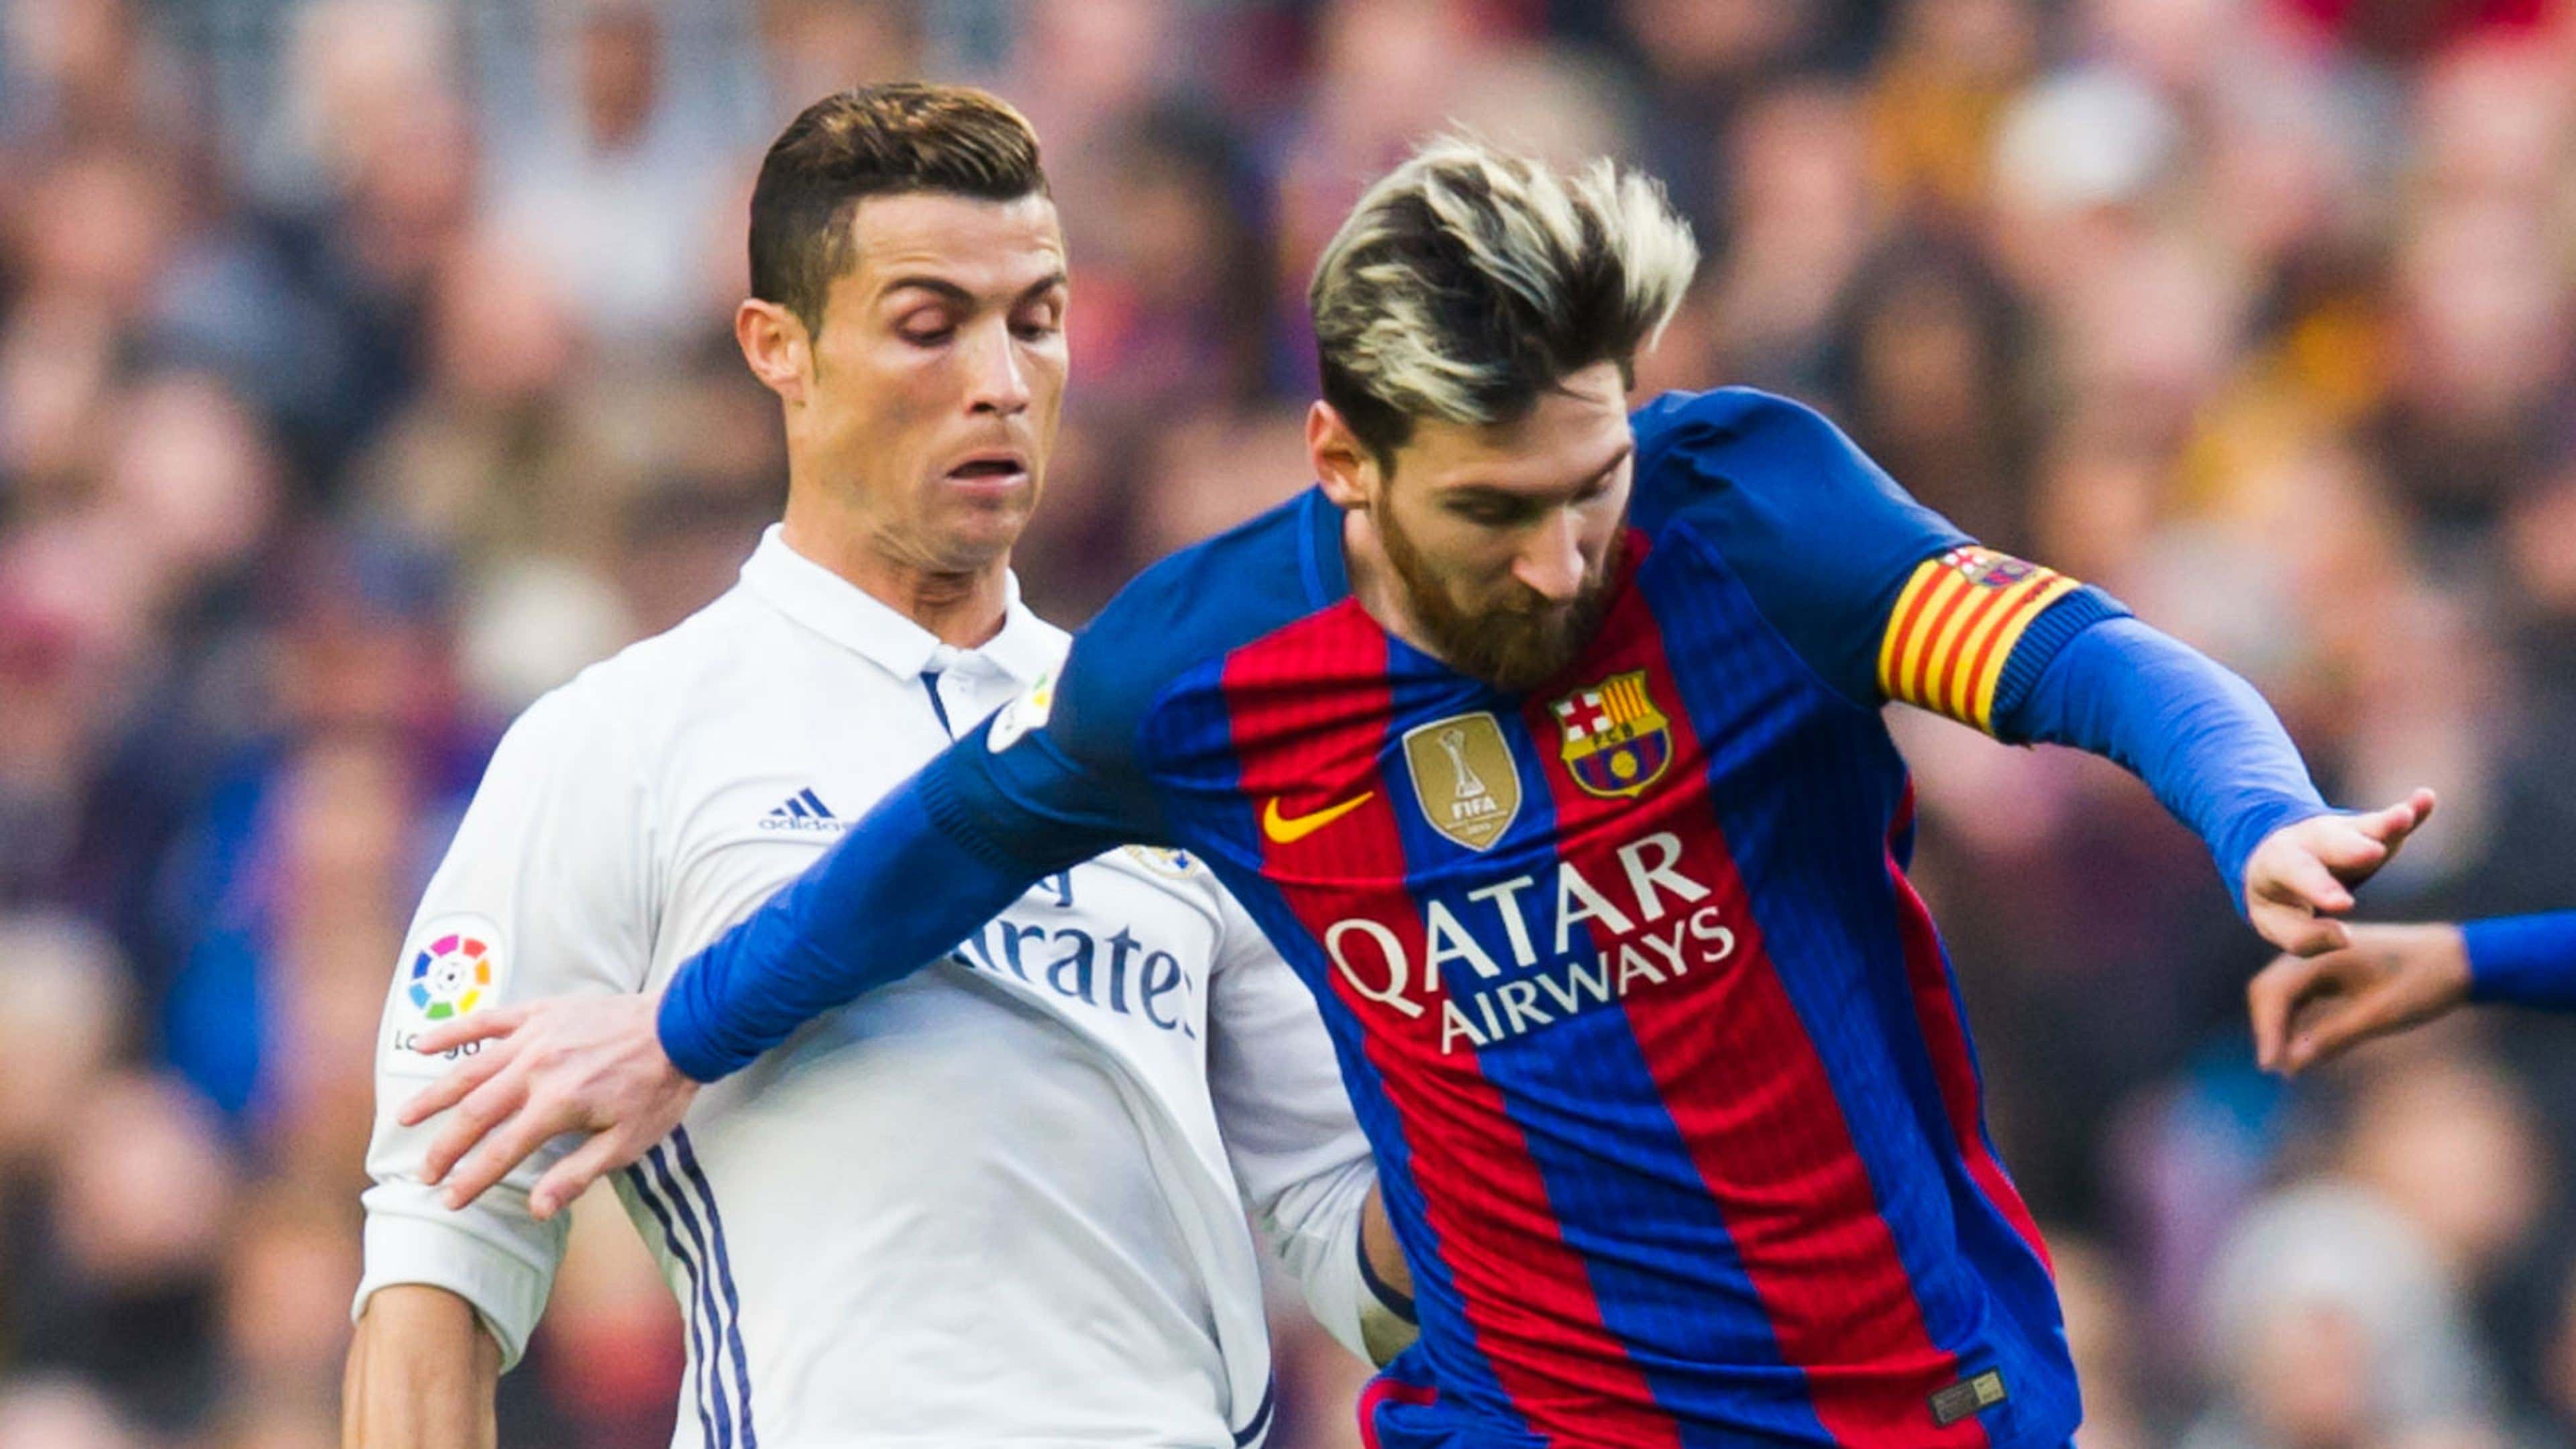 Messi, Neymar ou CR7: os números dizem quem é o melhor - a